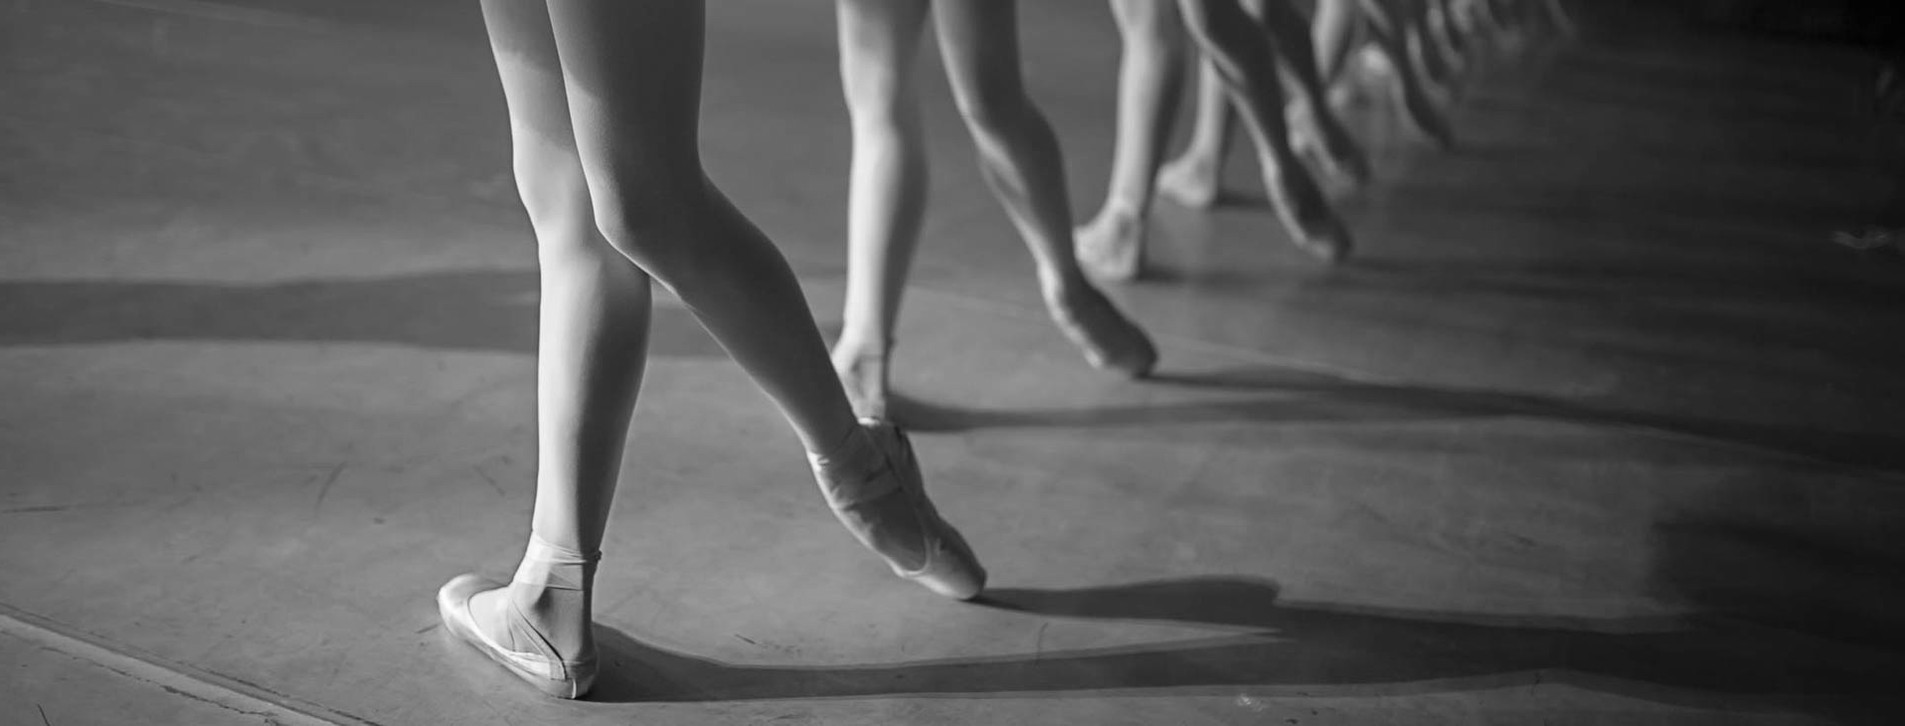 Фото 1 - Мастер-класс балета